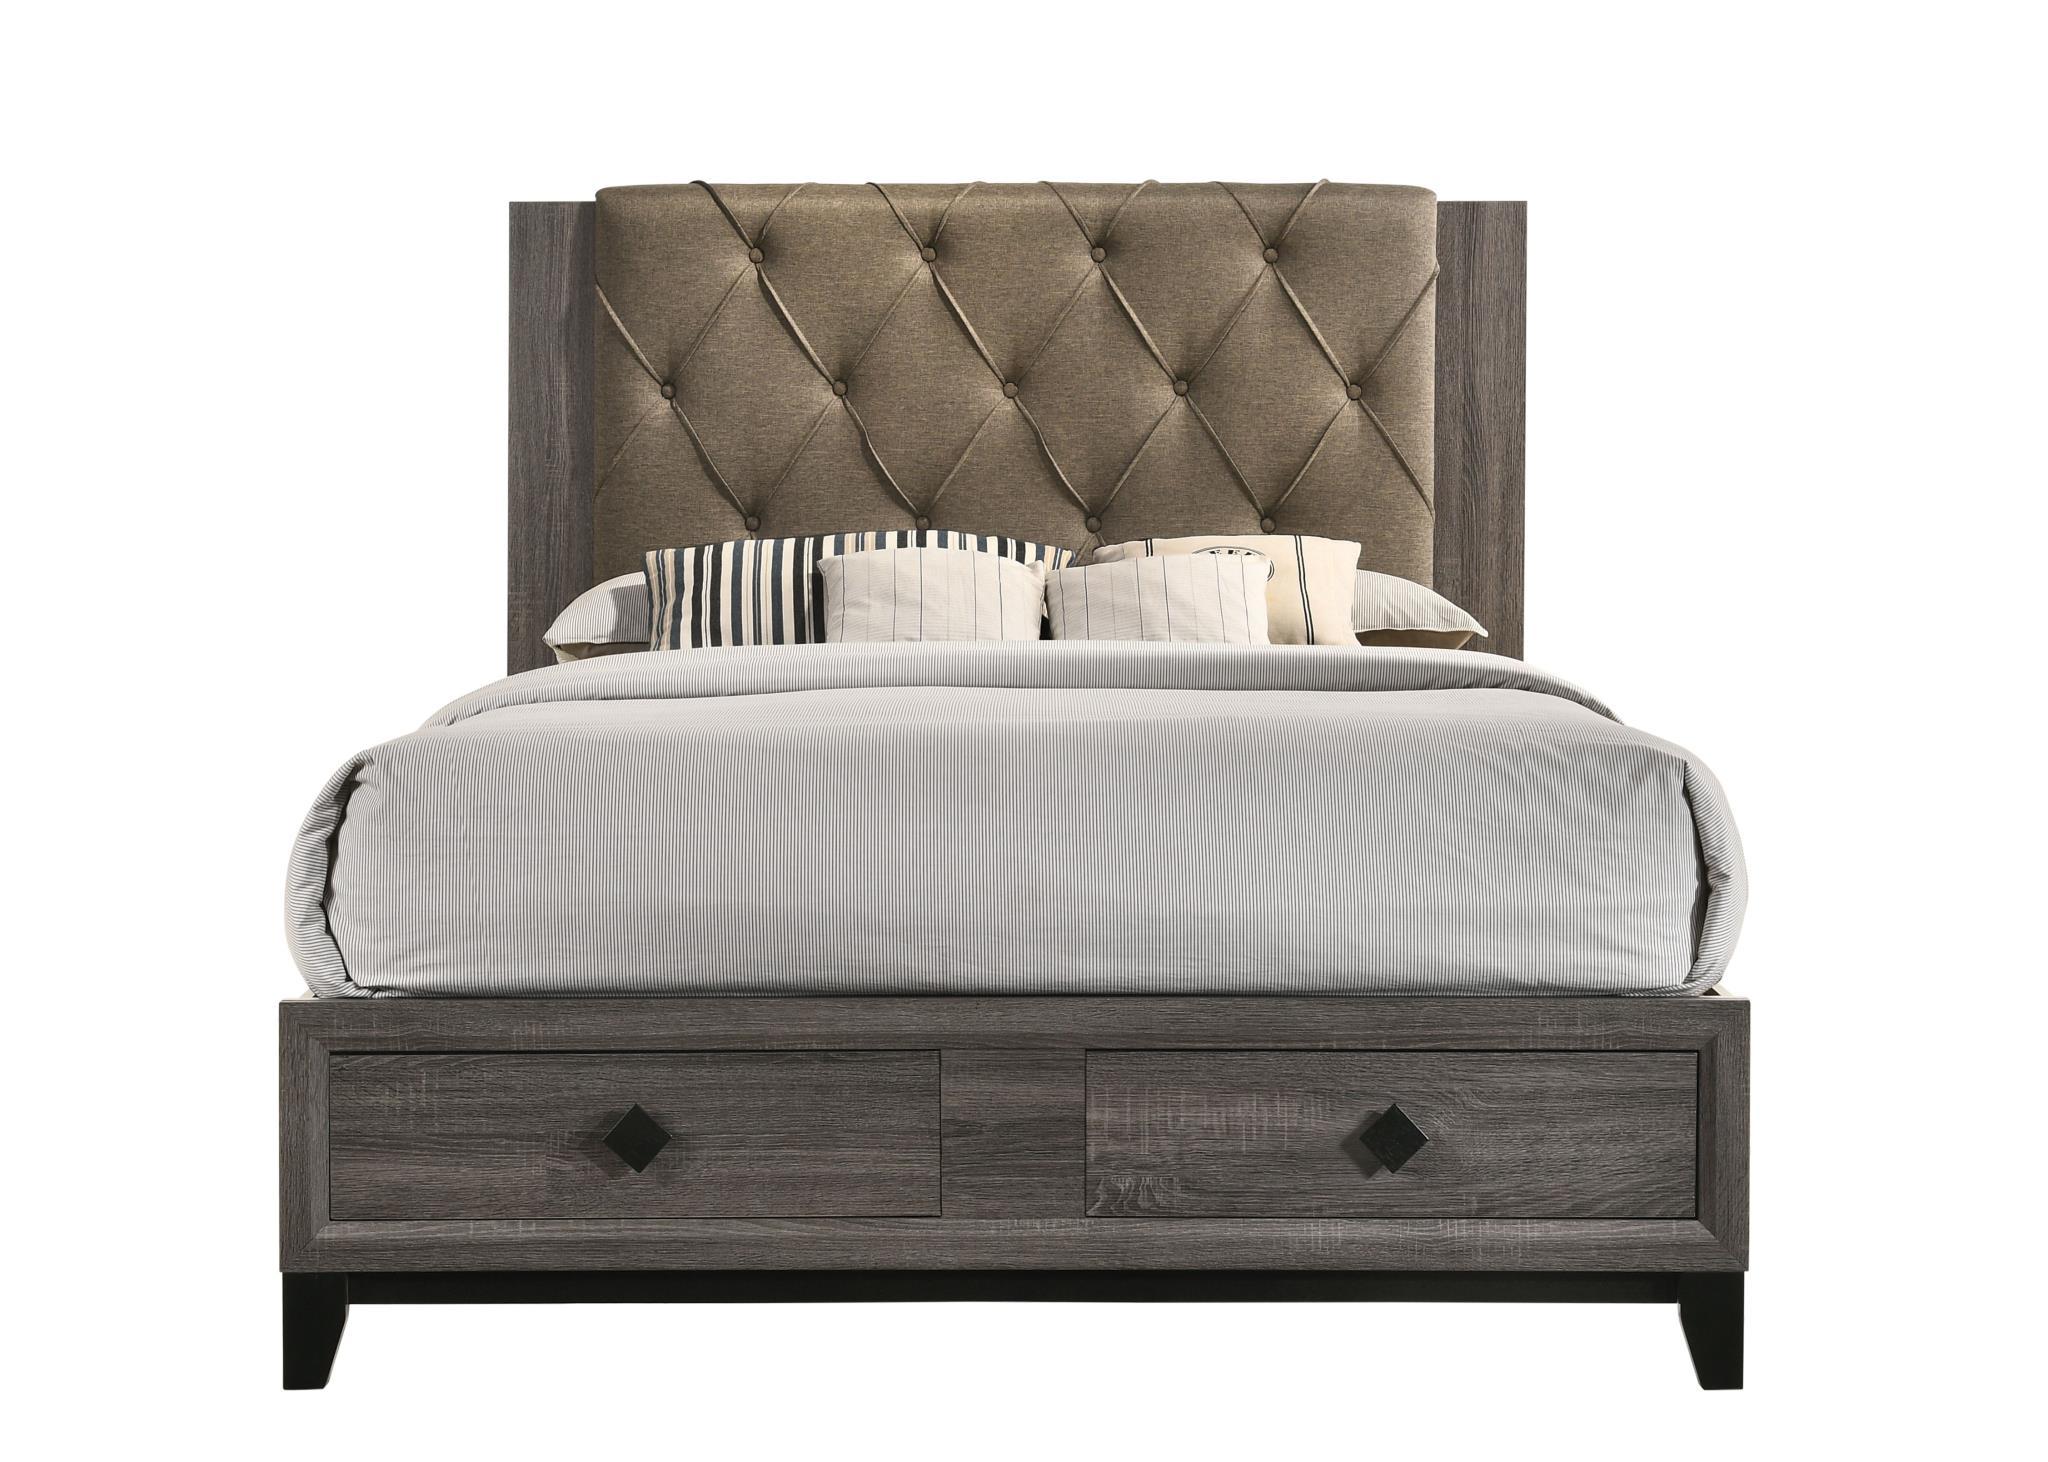 

    
Transitional Fabric & Rustic Gray Oak Queen Bedroom Set 5PCS by Acme Avantika-27670Q-S
